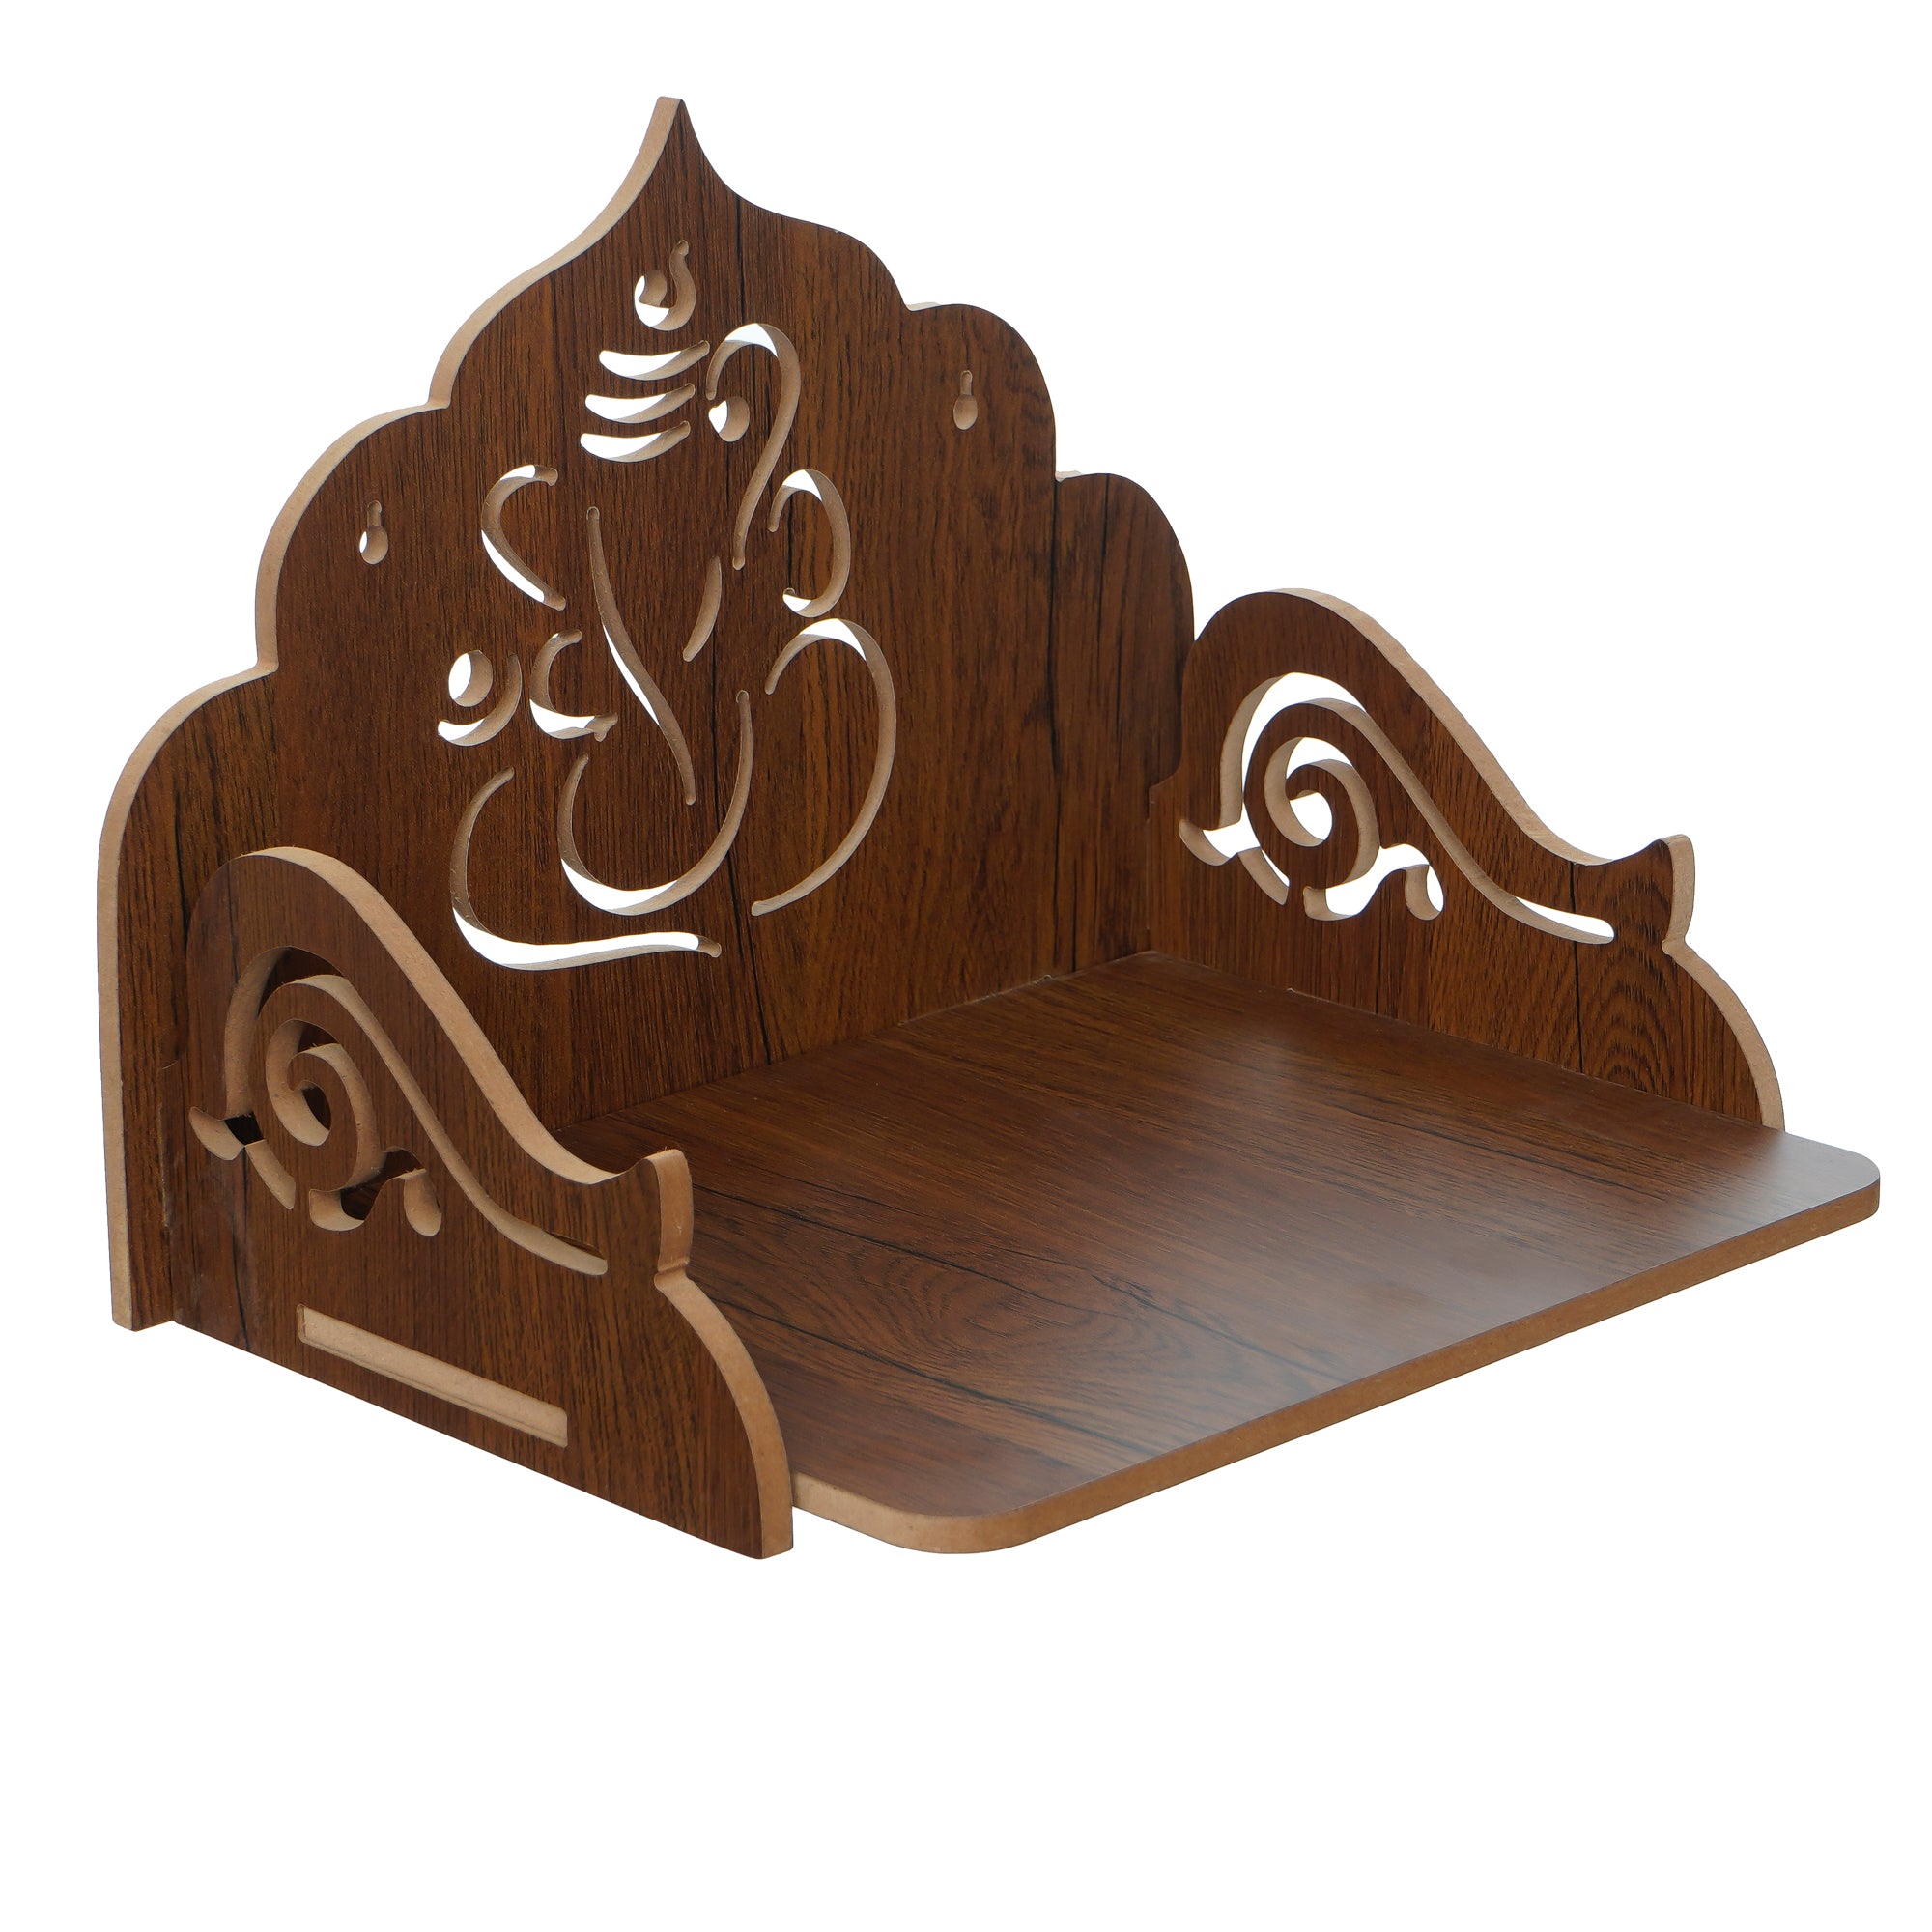 Ganesha Design Laminated Wood Pooja Temple/Mandir 2